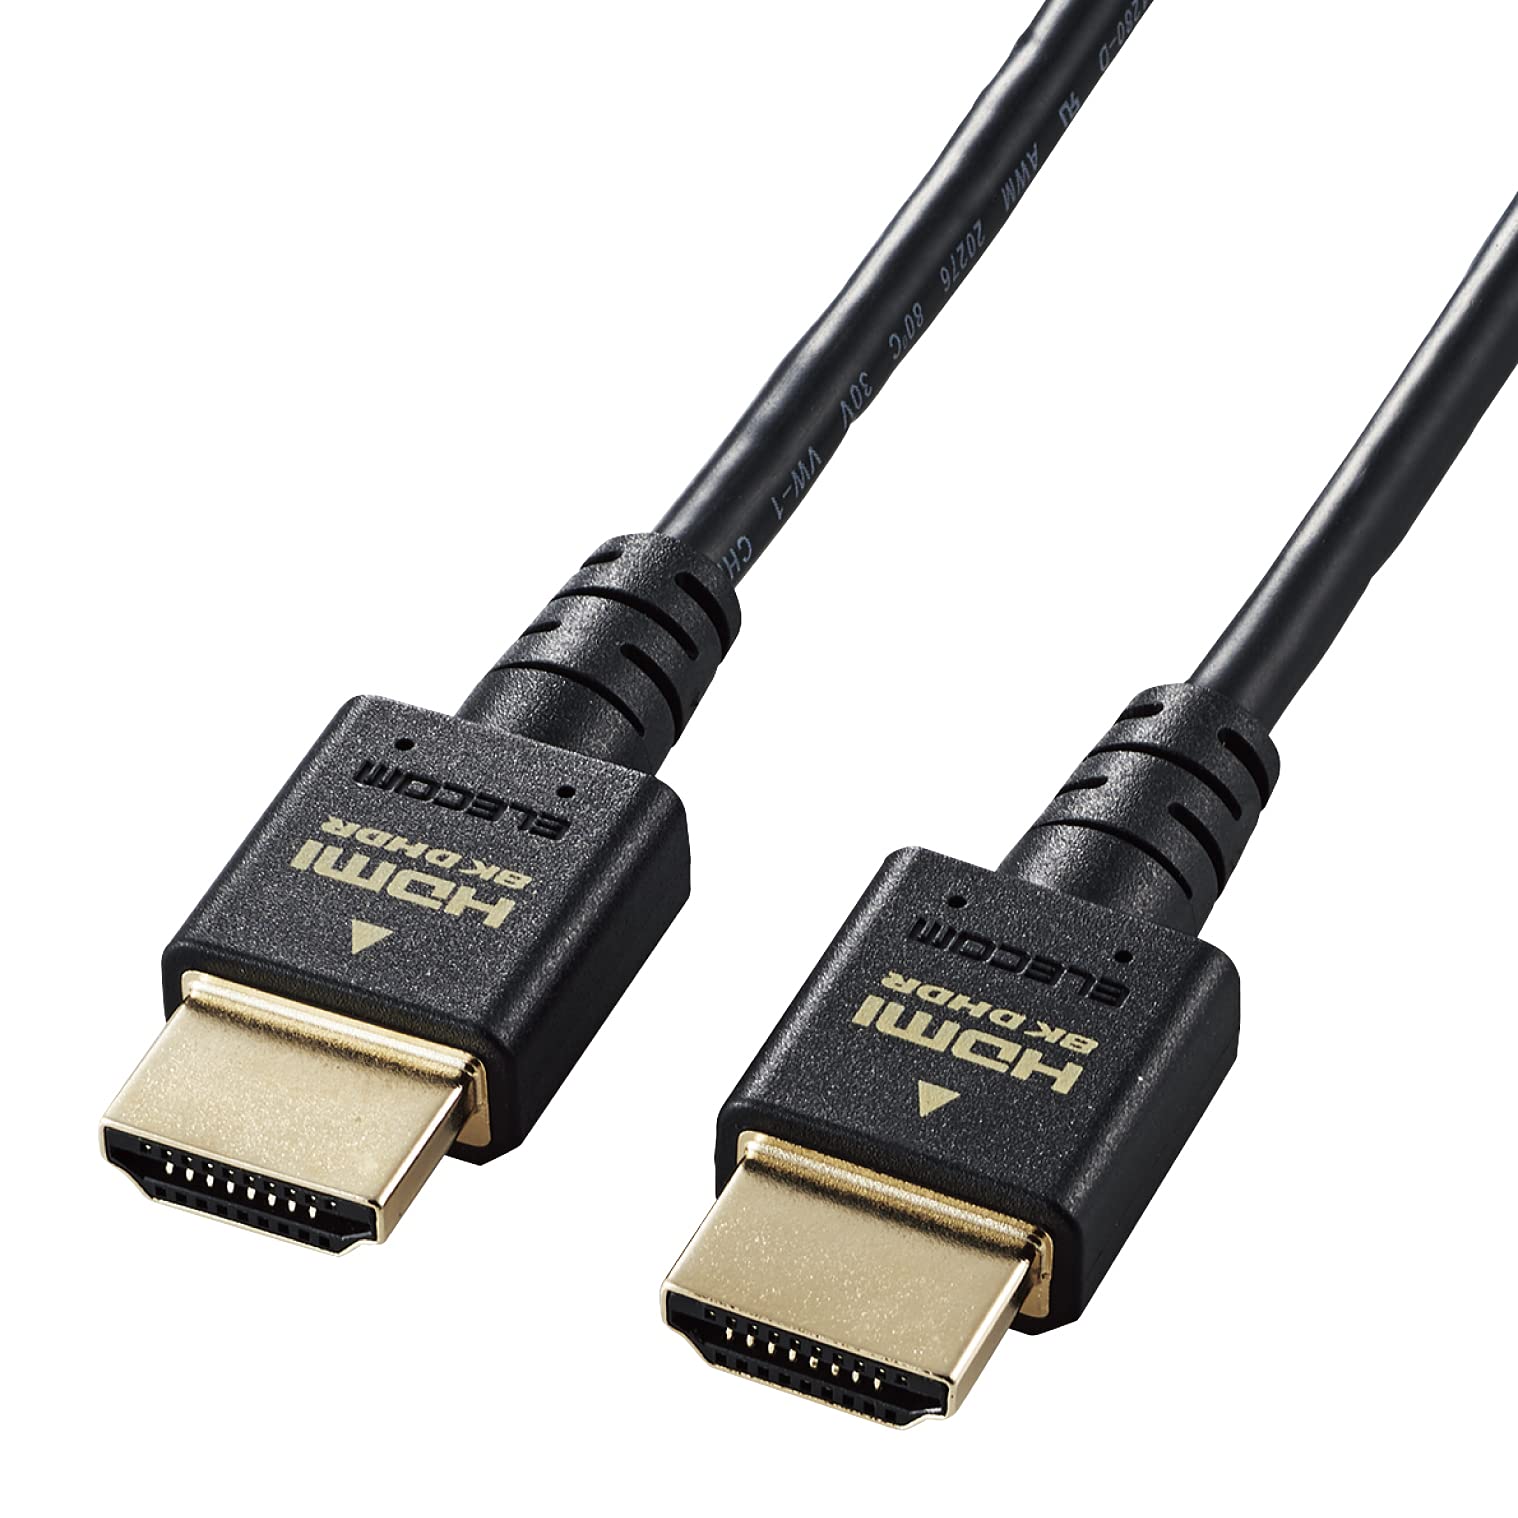 エレコム HDMI 2.1 ケーブル スリム ウルトラハイスピード 2m Ultra High Speed HDMI Cable認証品 8K(60Hz) 4K(120Hz) 48Gbps 超高速 PS5 / PS4 Nintendo Switch 対応 7680×4320 eARC VRR 黒 ブラック DH-HD21ES20BK